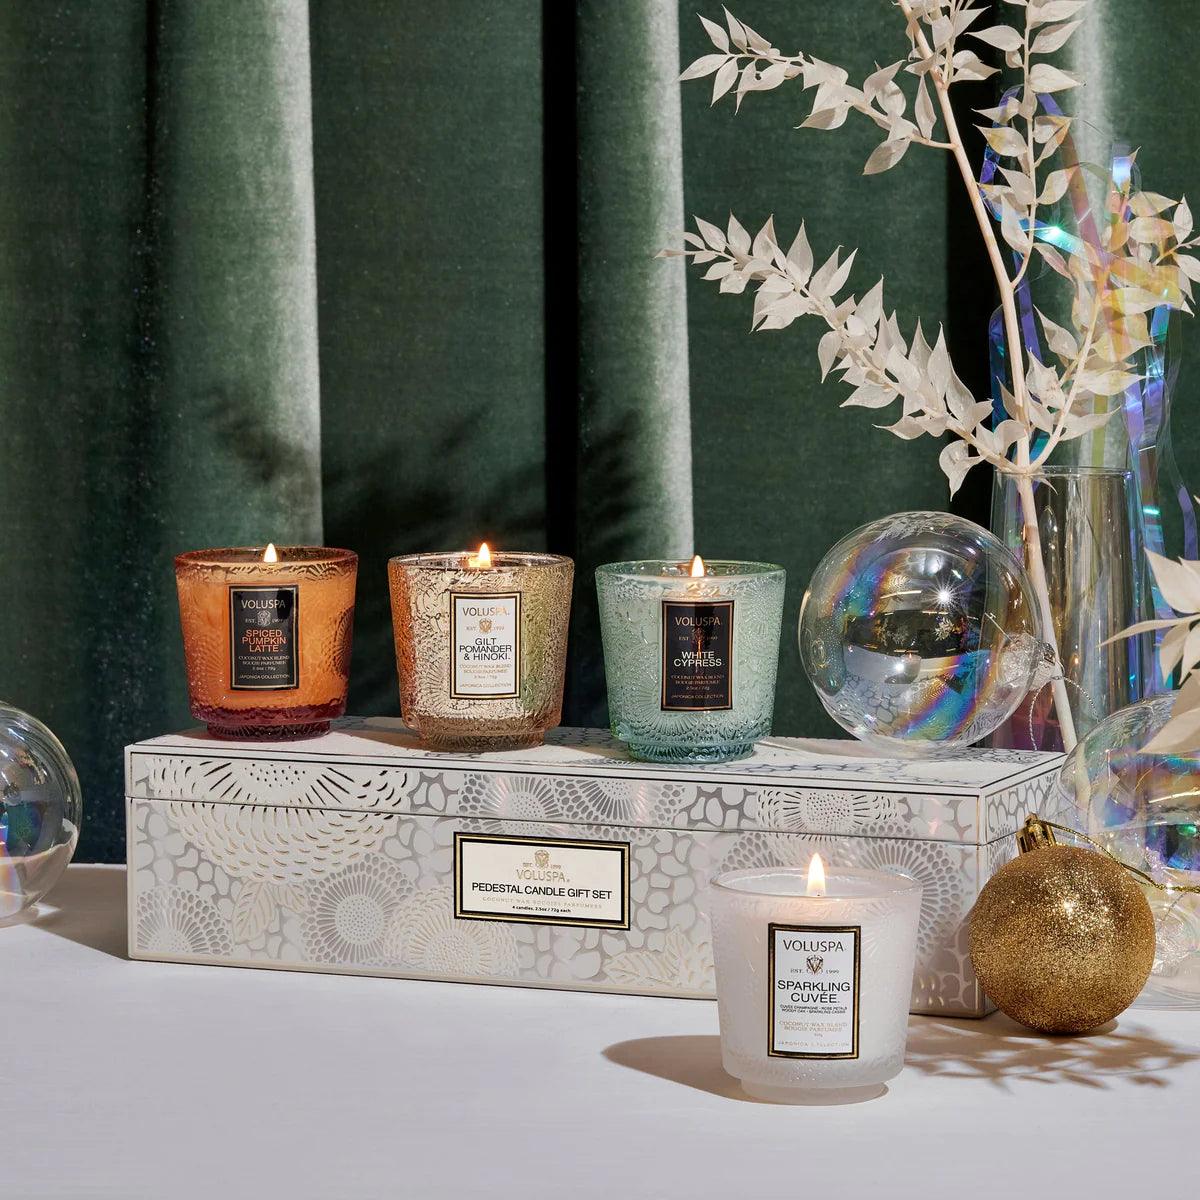 Voluspa Voluspa Winter White Geschenkset mit 4 Pedestal Duftkerzen | Holiday Collection Codeso Living